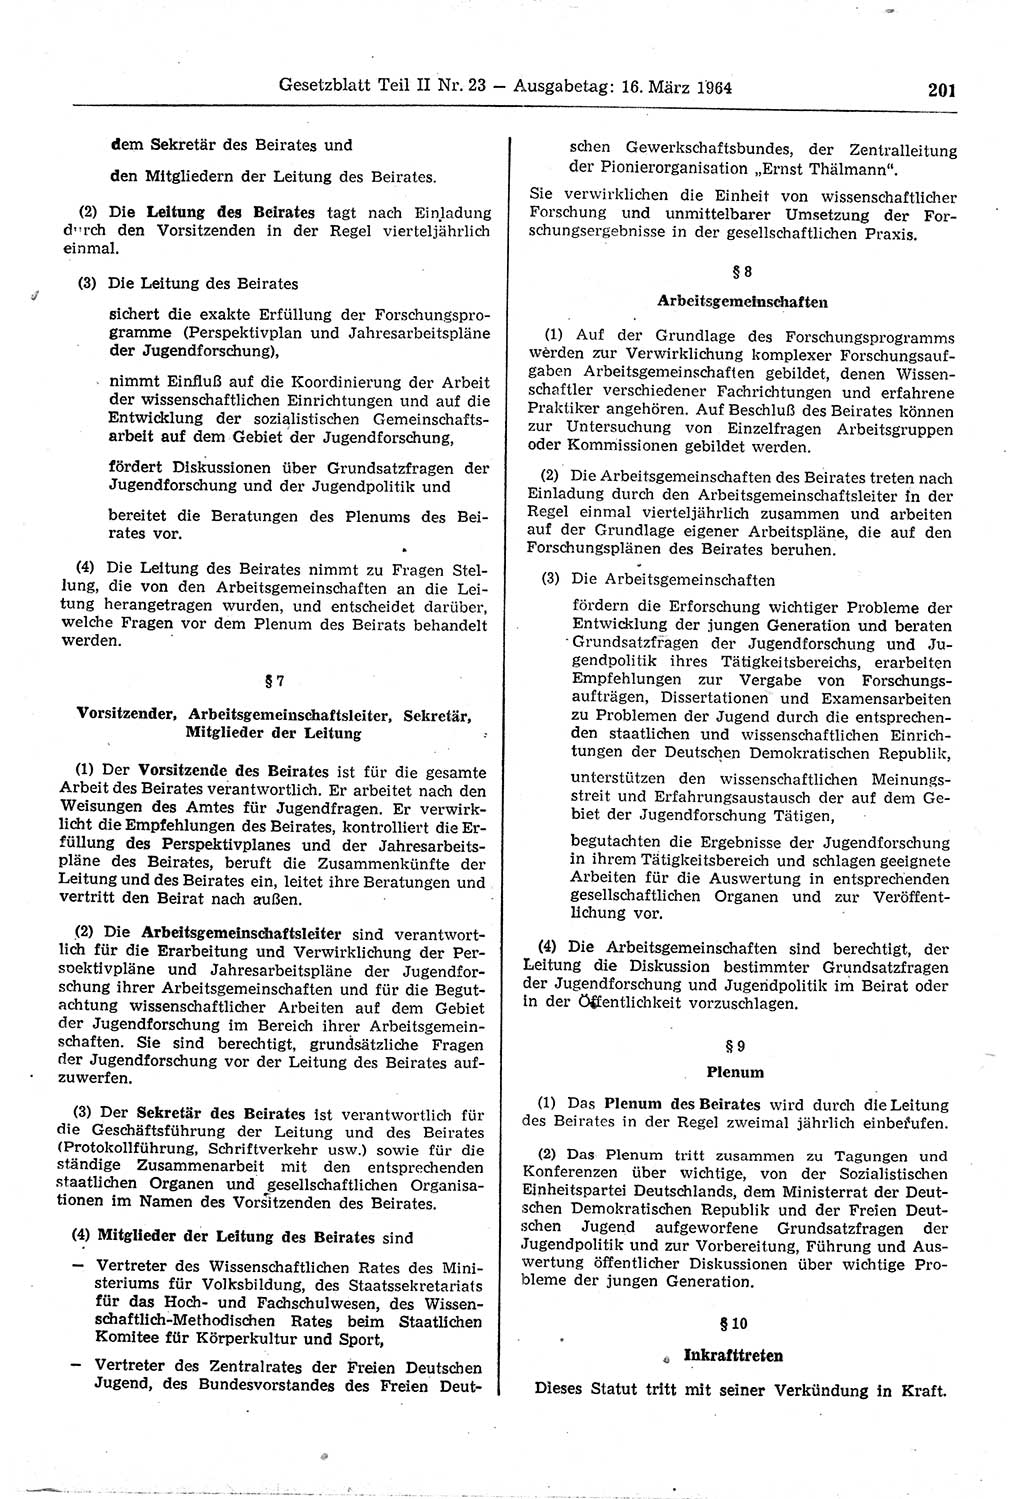 Gesetzblatt (GBl.) der Deutschen Demokratischen Republik (DDR) Teil ⅠⅠ 1964, Seite 201 (GBl. DDR ⅠⅠ 1964, S. 201)